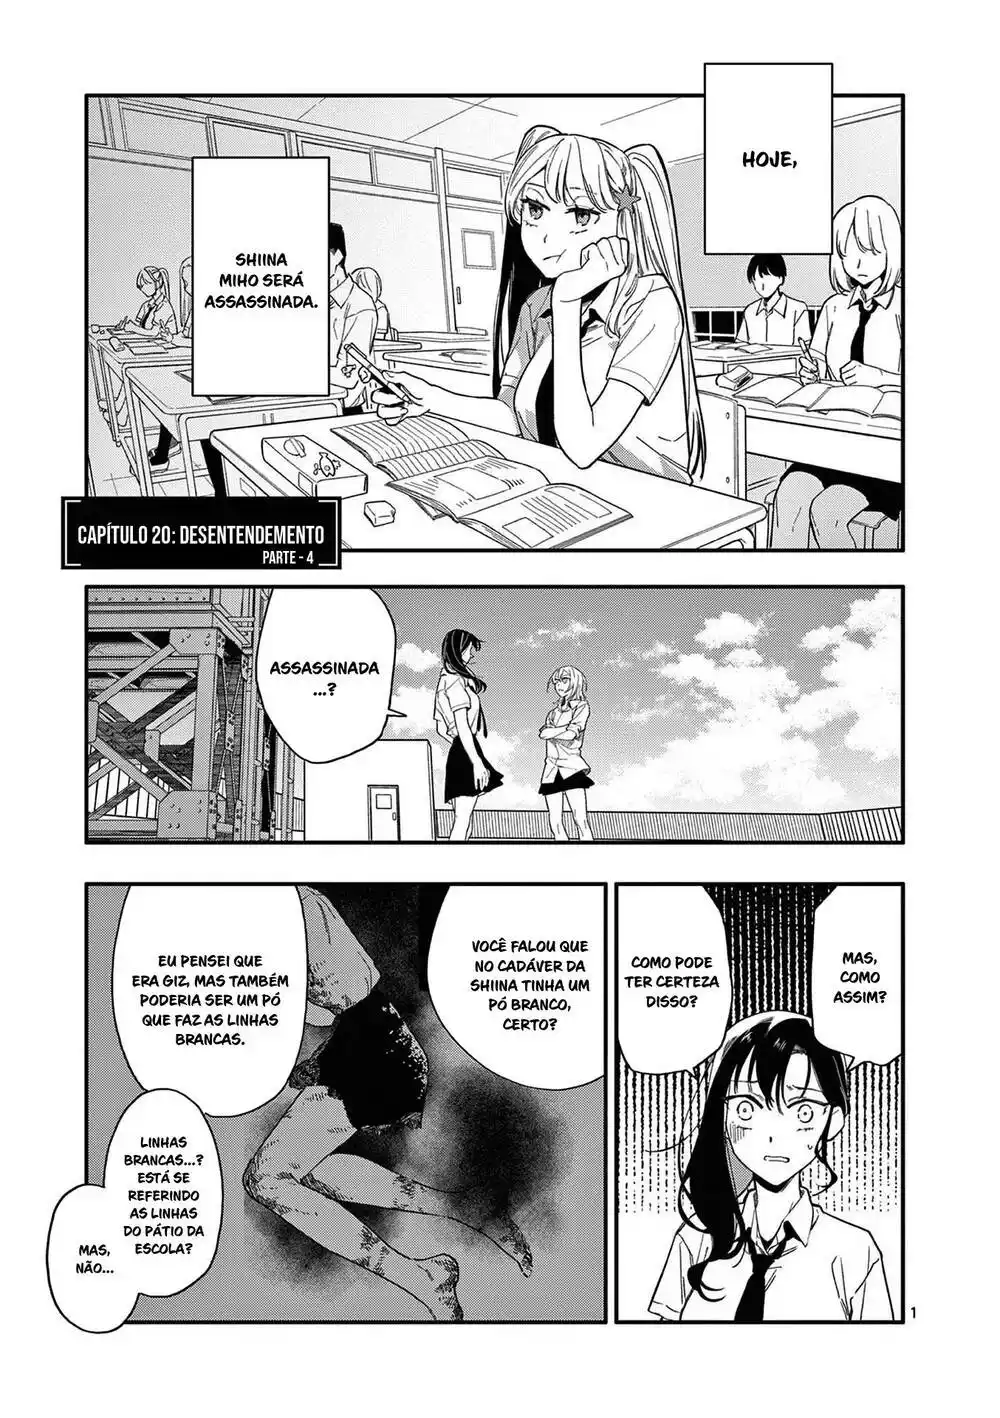 Liar Satsuki Can See Death (Usotsuki Satsuki wa Shi ga Mieru) 20 página 2